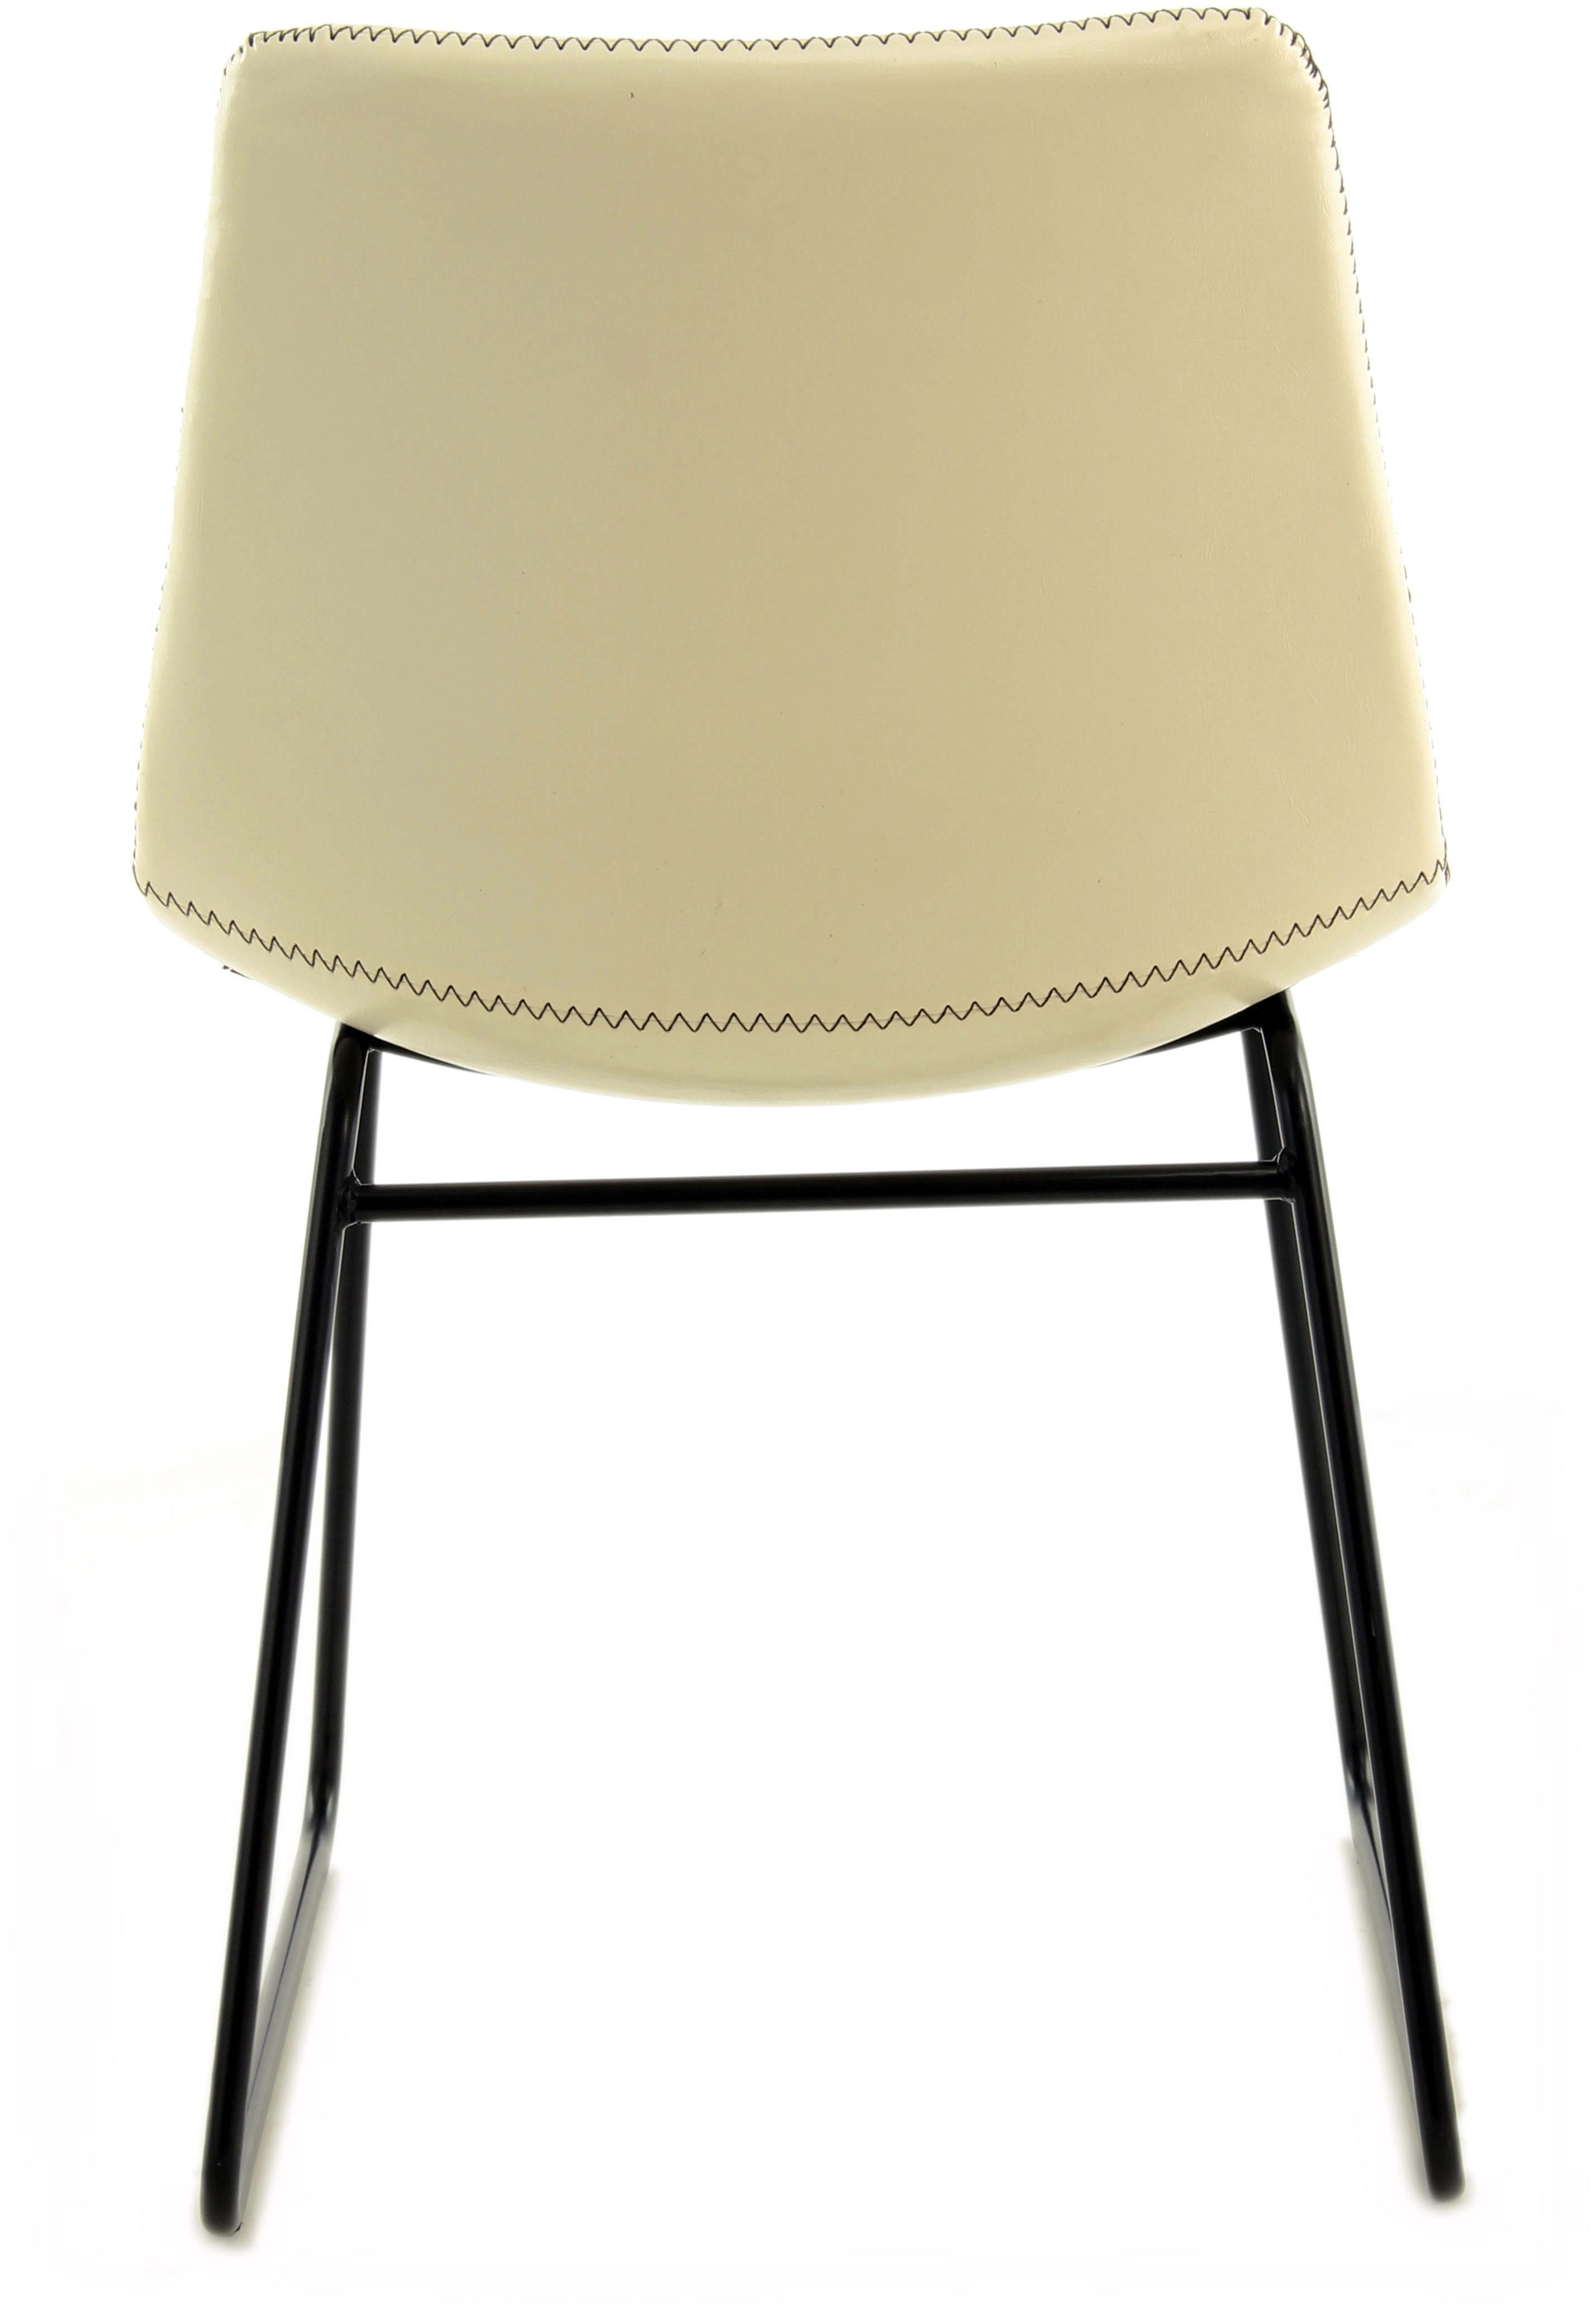 Stuhl OBI - cm 48,5 56,5 Kayoom 2er-Set Creme Weiß x kaufen bei 80 110 cm cm x Caila